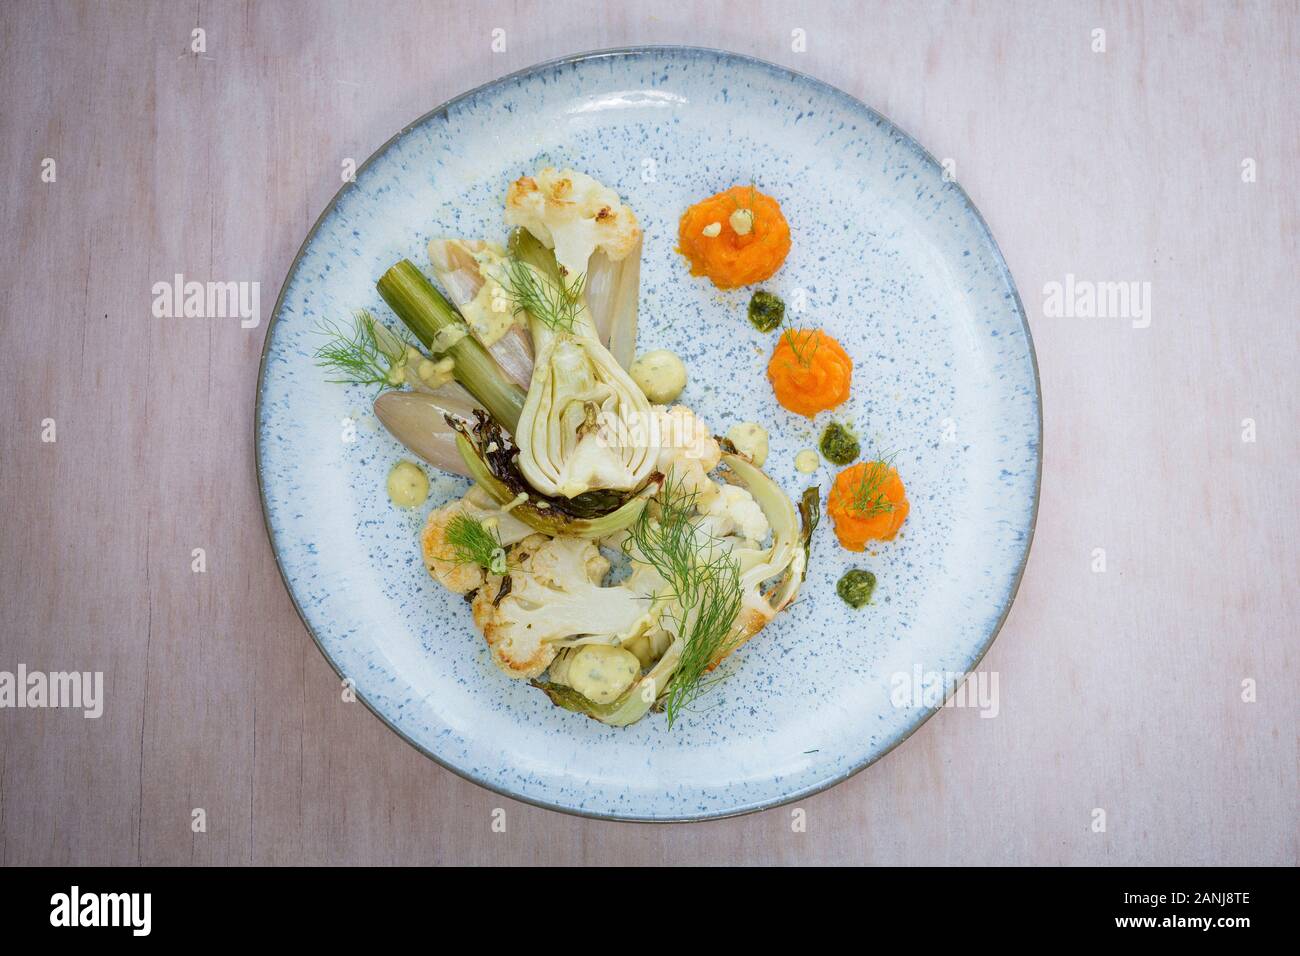 Veganer Hauptgang: Blumenkohlsteak mit Fenchel und Karottenpüree. Holzhintergrund und Draufsicht. Vegetarisches Essen Stockfoto